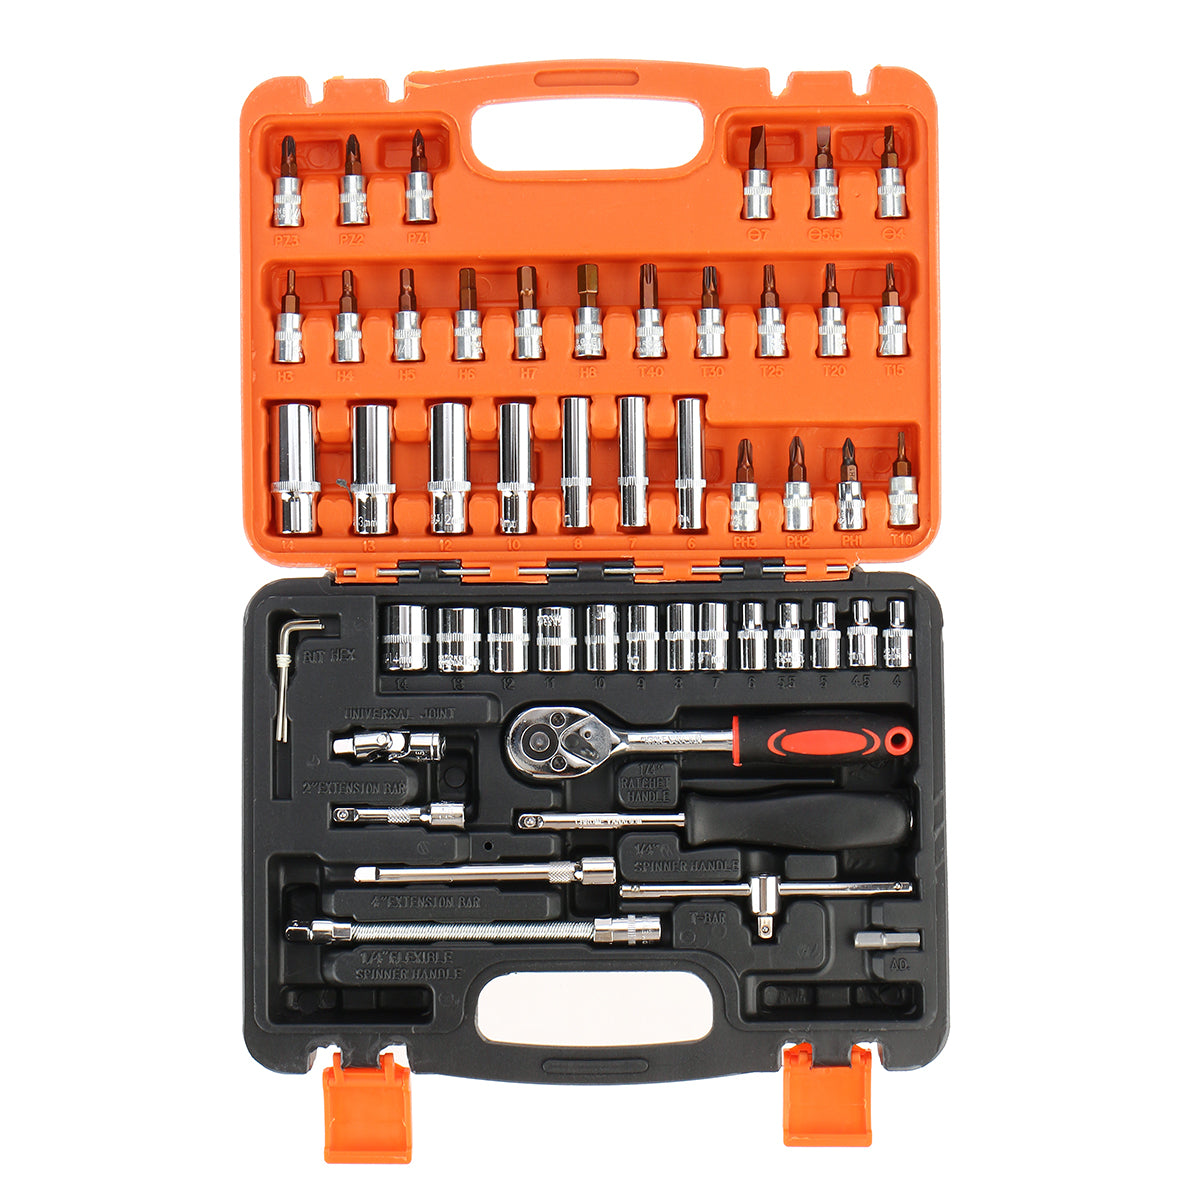 Tomato 40pcs/46pcs/53pcs Socket Ratchet Wrench Set Sleeve 3/8" &1/4" Repair Hardware Tool